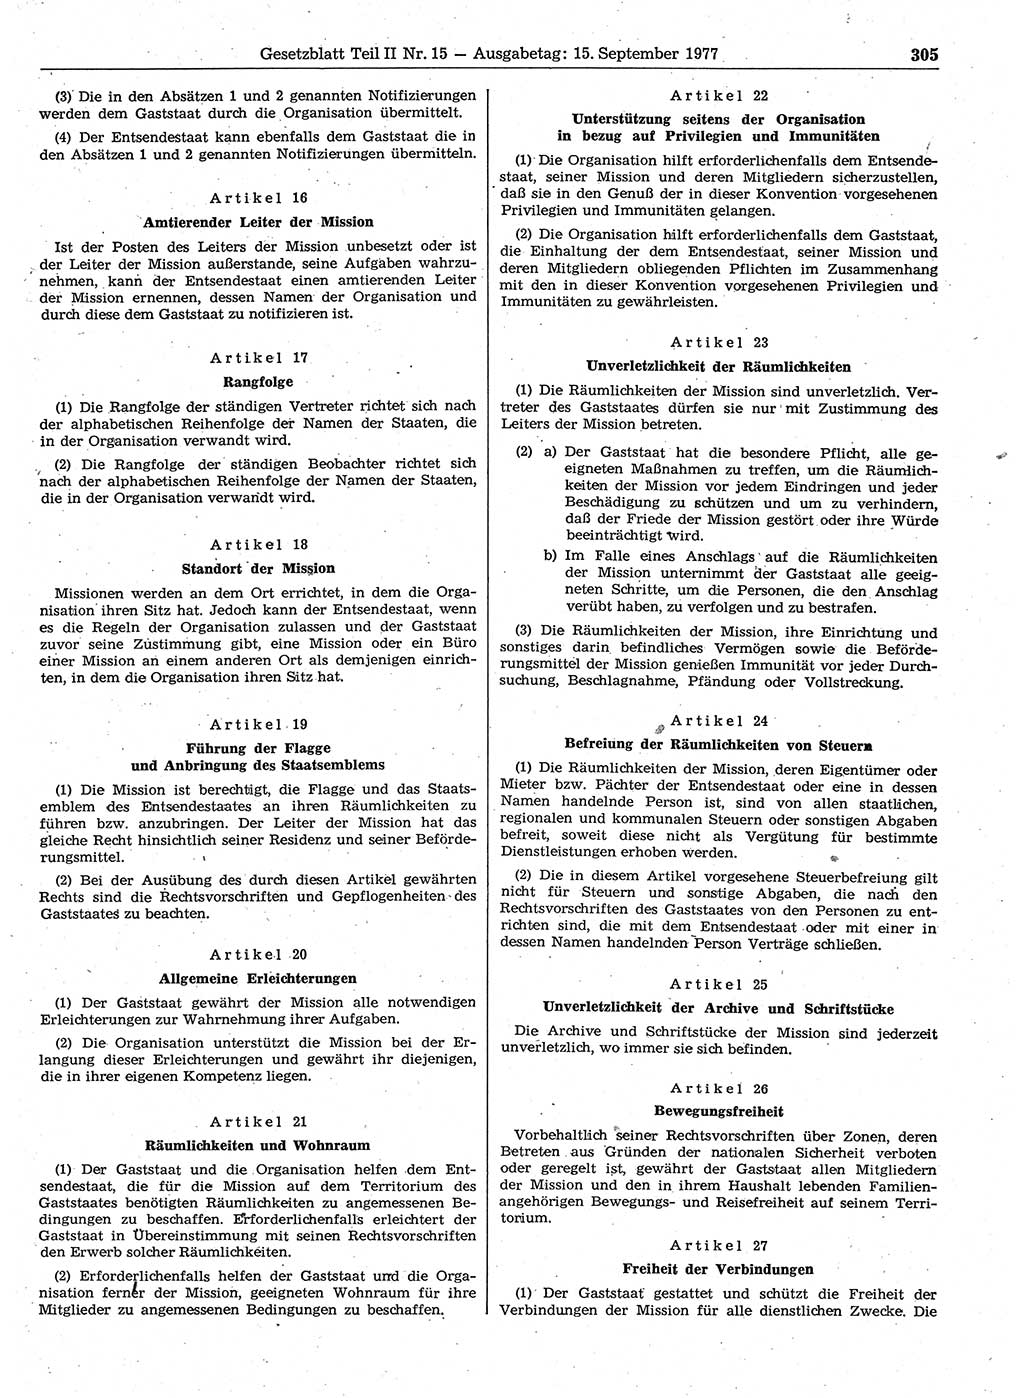 Gesetzblatt (GBl.) der Deutschen Demokratischen Republik (DDR) Teil ⅠⅠ 1977, Seite 305 (GBl. DDR ⅠⅠ 1977, S. 305)